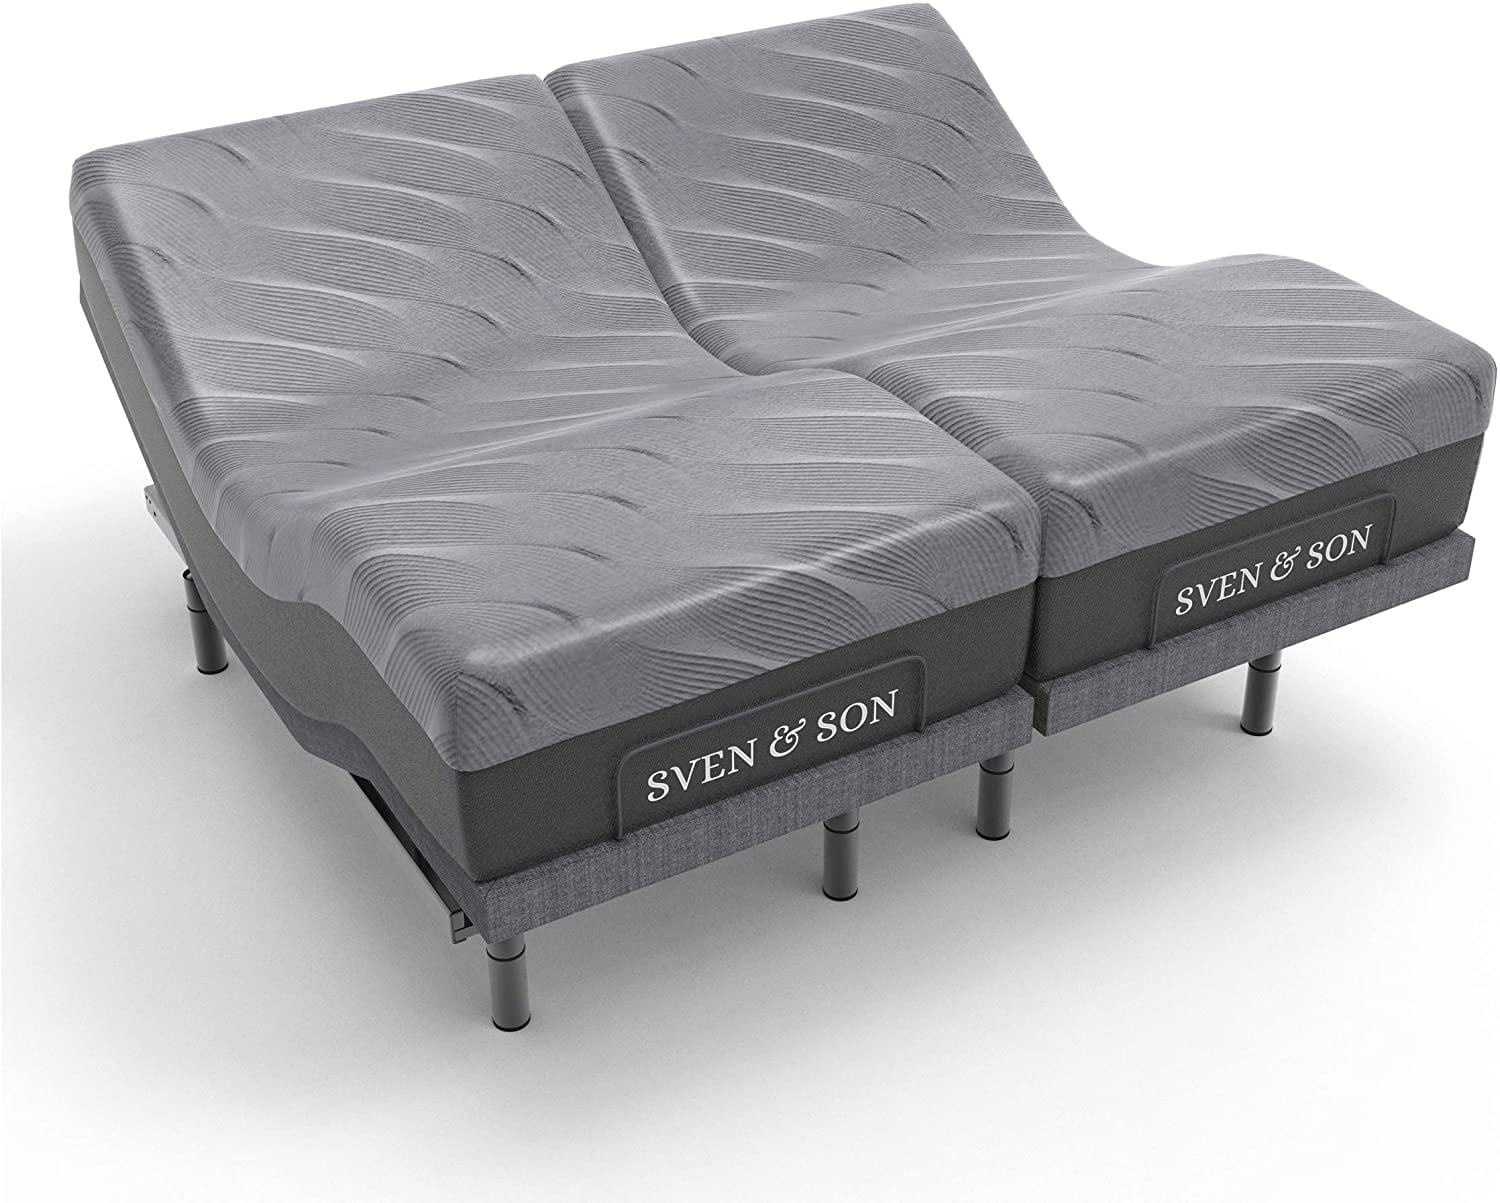 Sven Son Split King Adjustable Bed, Rv Adjustable Bed Frame